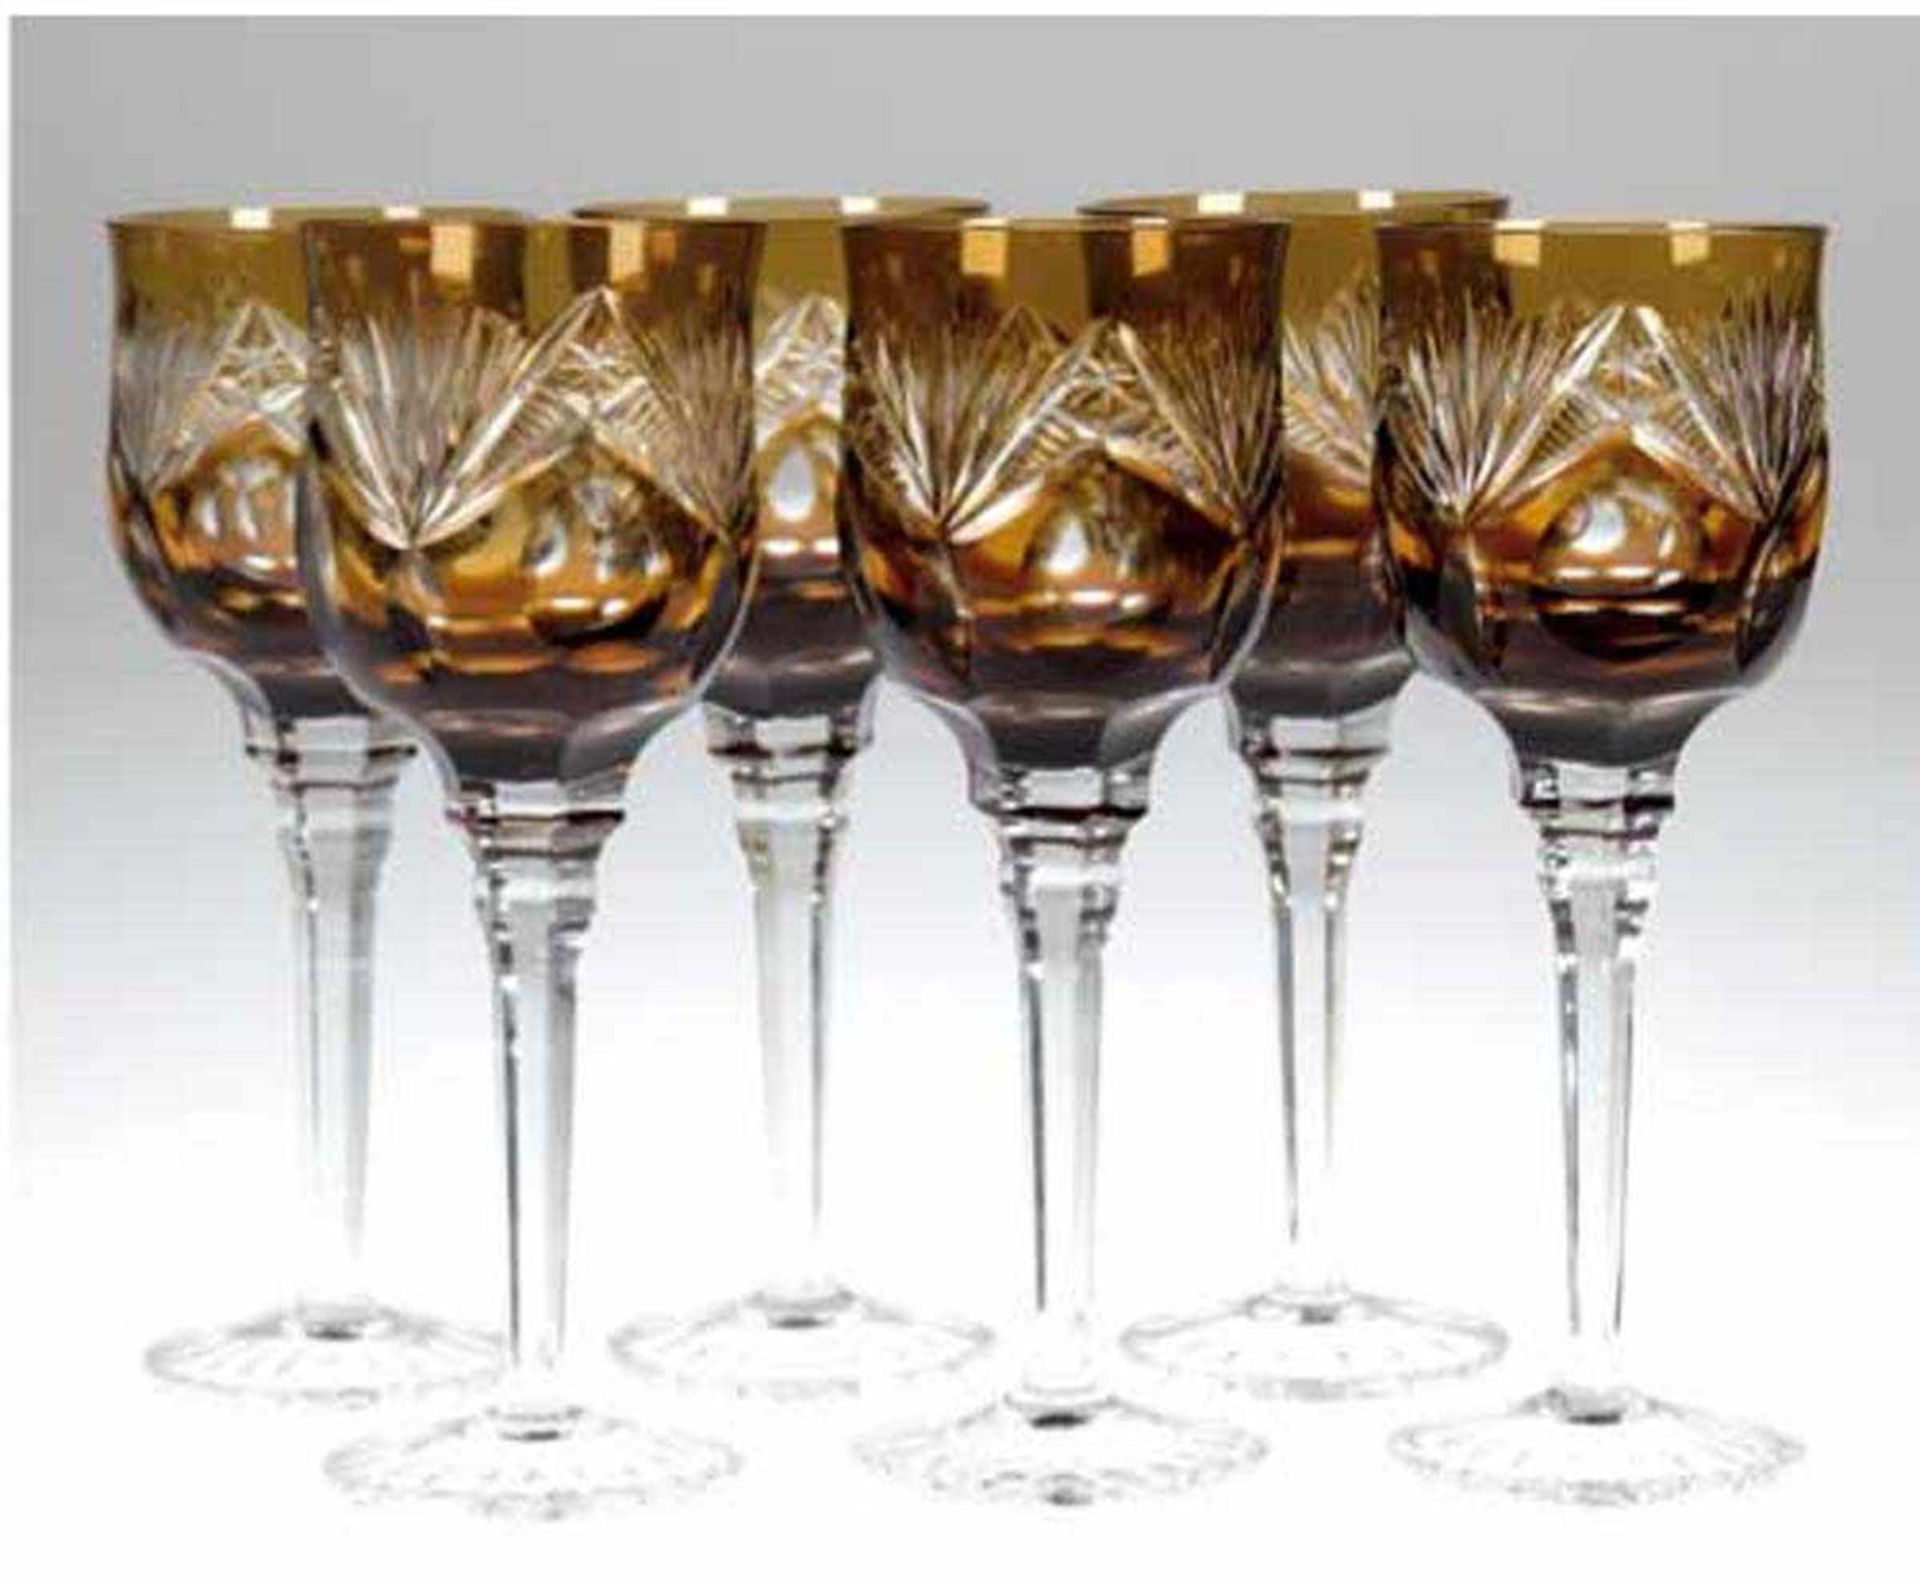 6 Römer-Weingläser, braunes Glas, Farbverlauf braun/ocker, Bleikristall, H. 21,5 cm